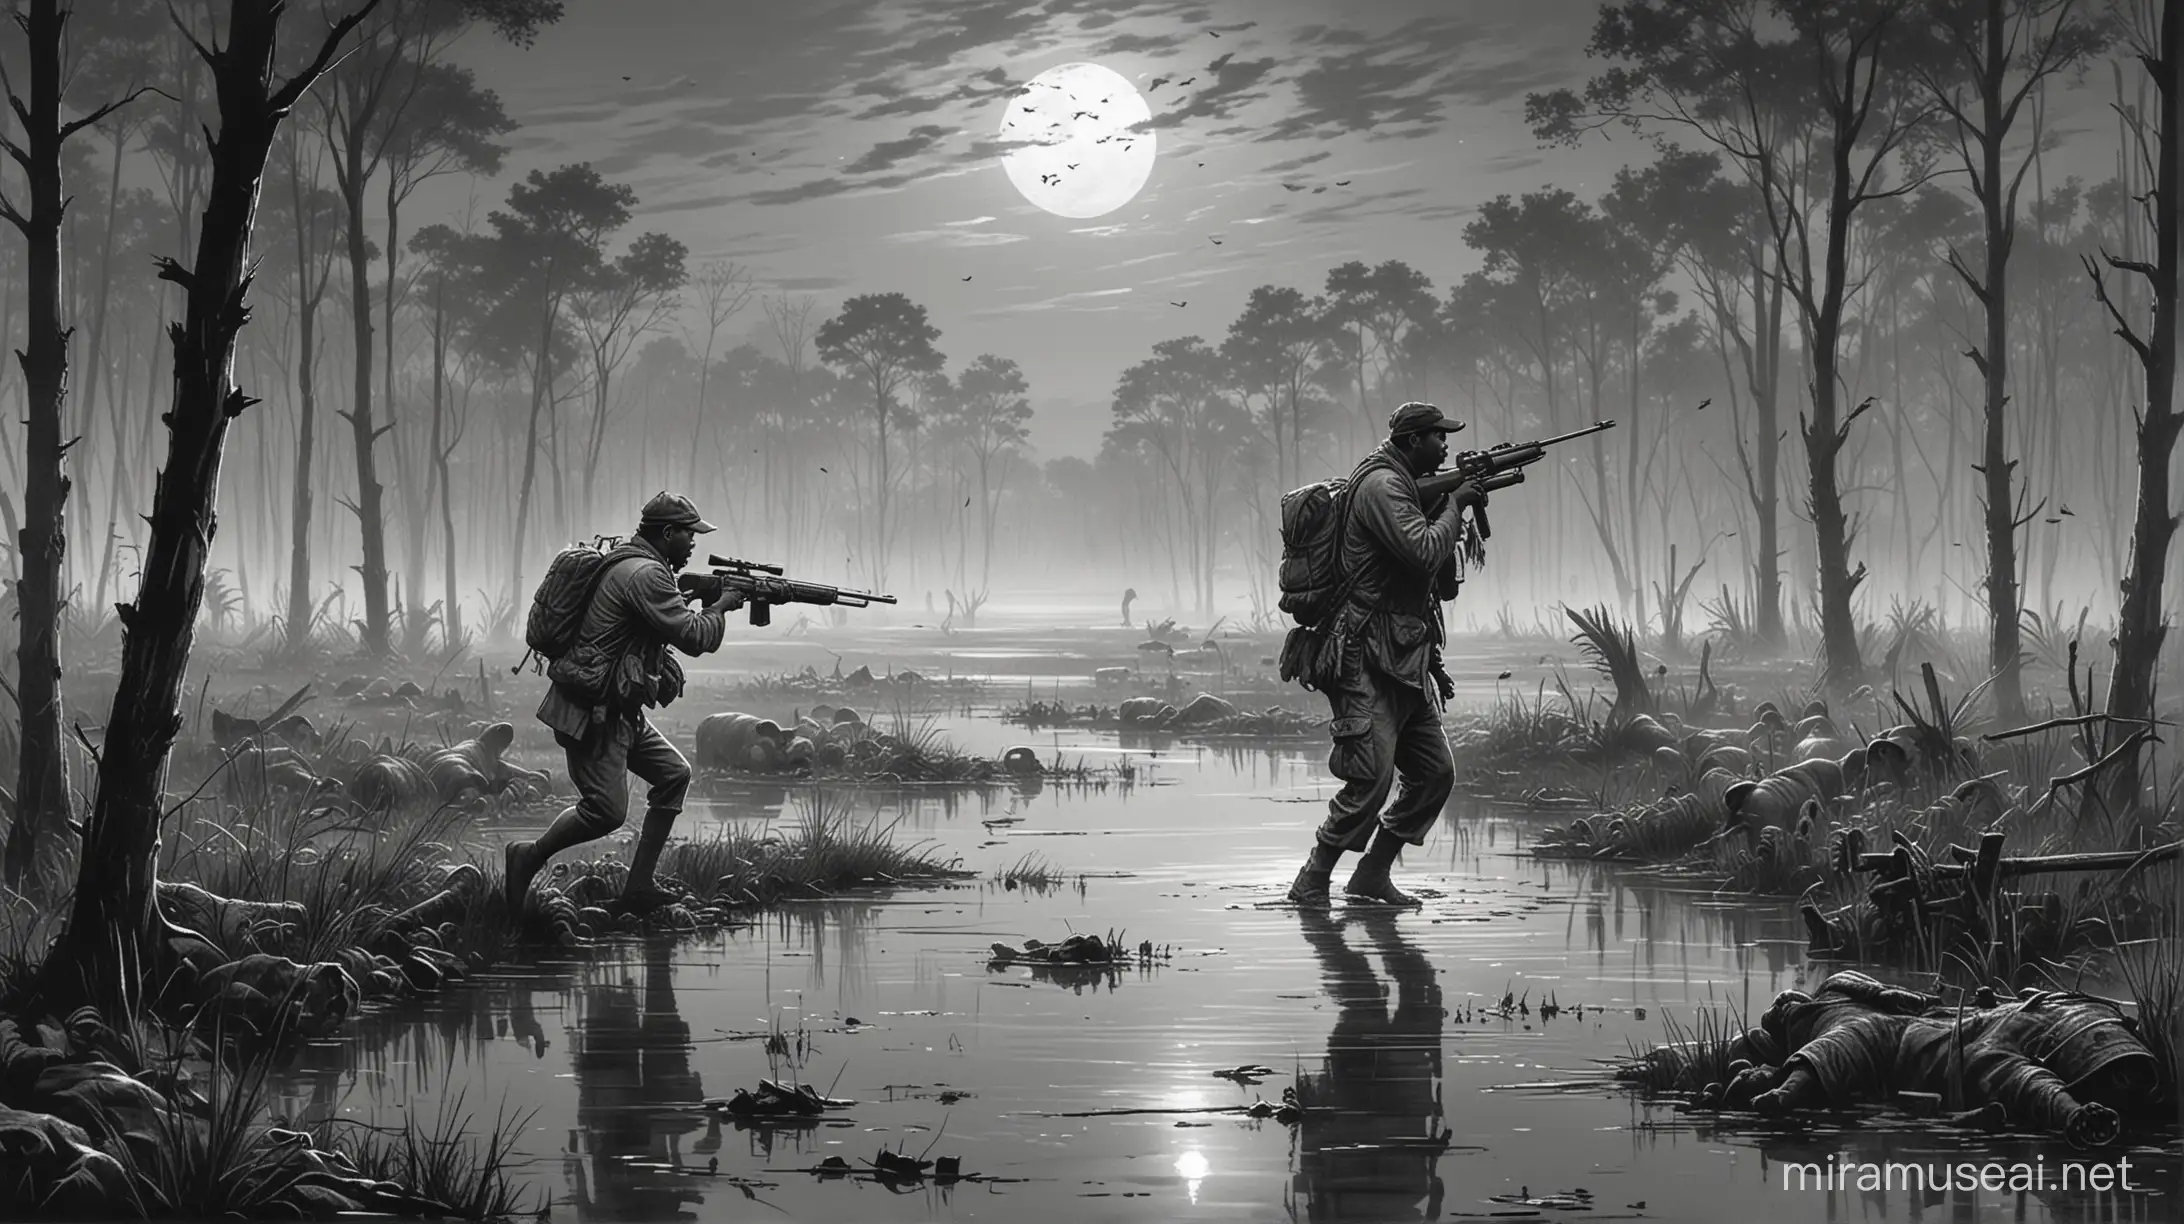 Black Indian Men Shooting Guns in Swamp at Night with Running Pig Sketch